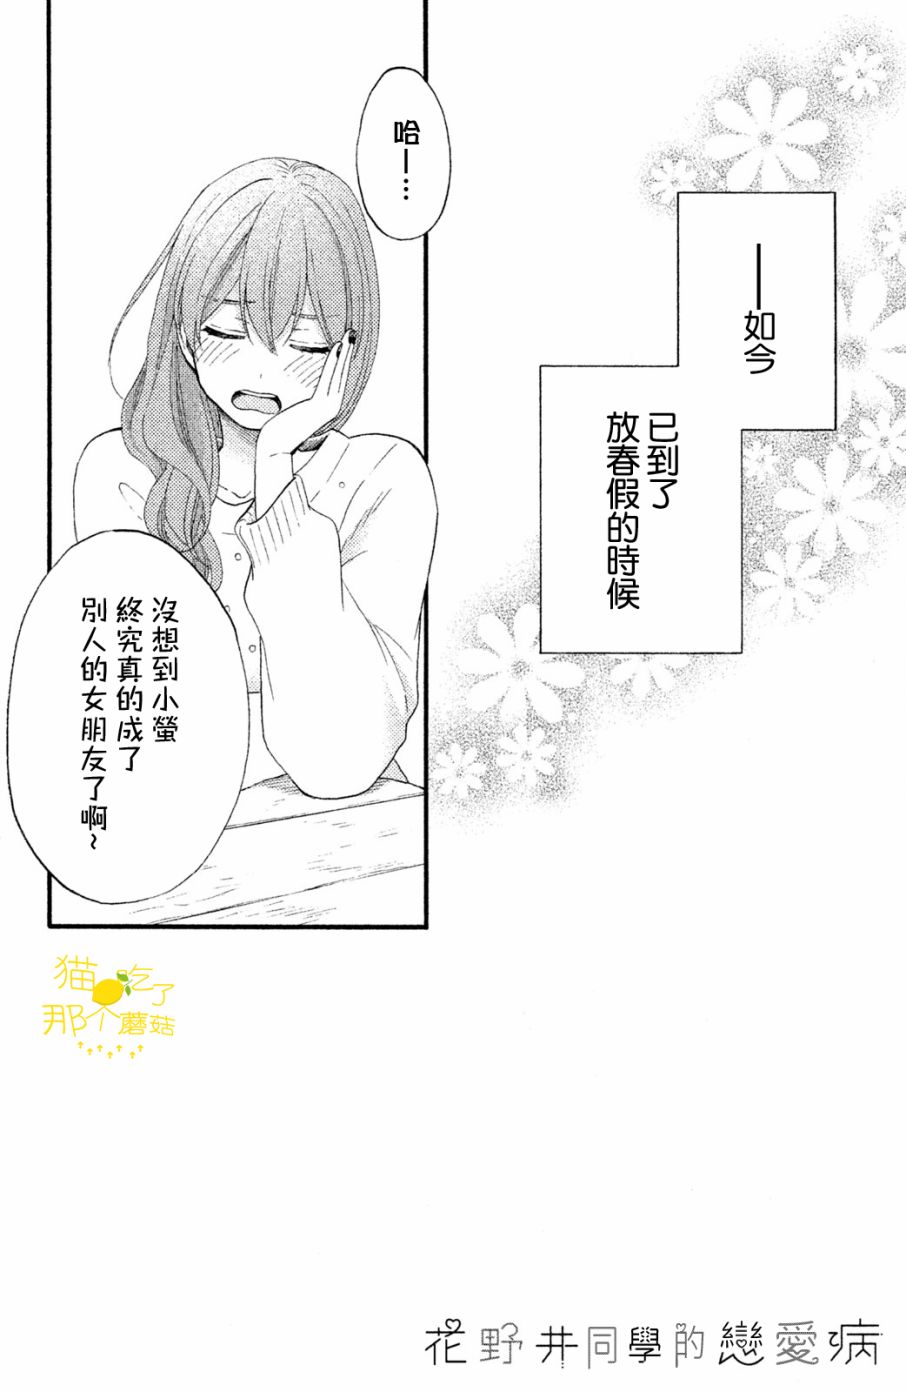 《花野井同学的恋爱病》14话第3页